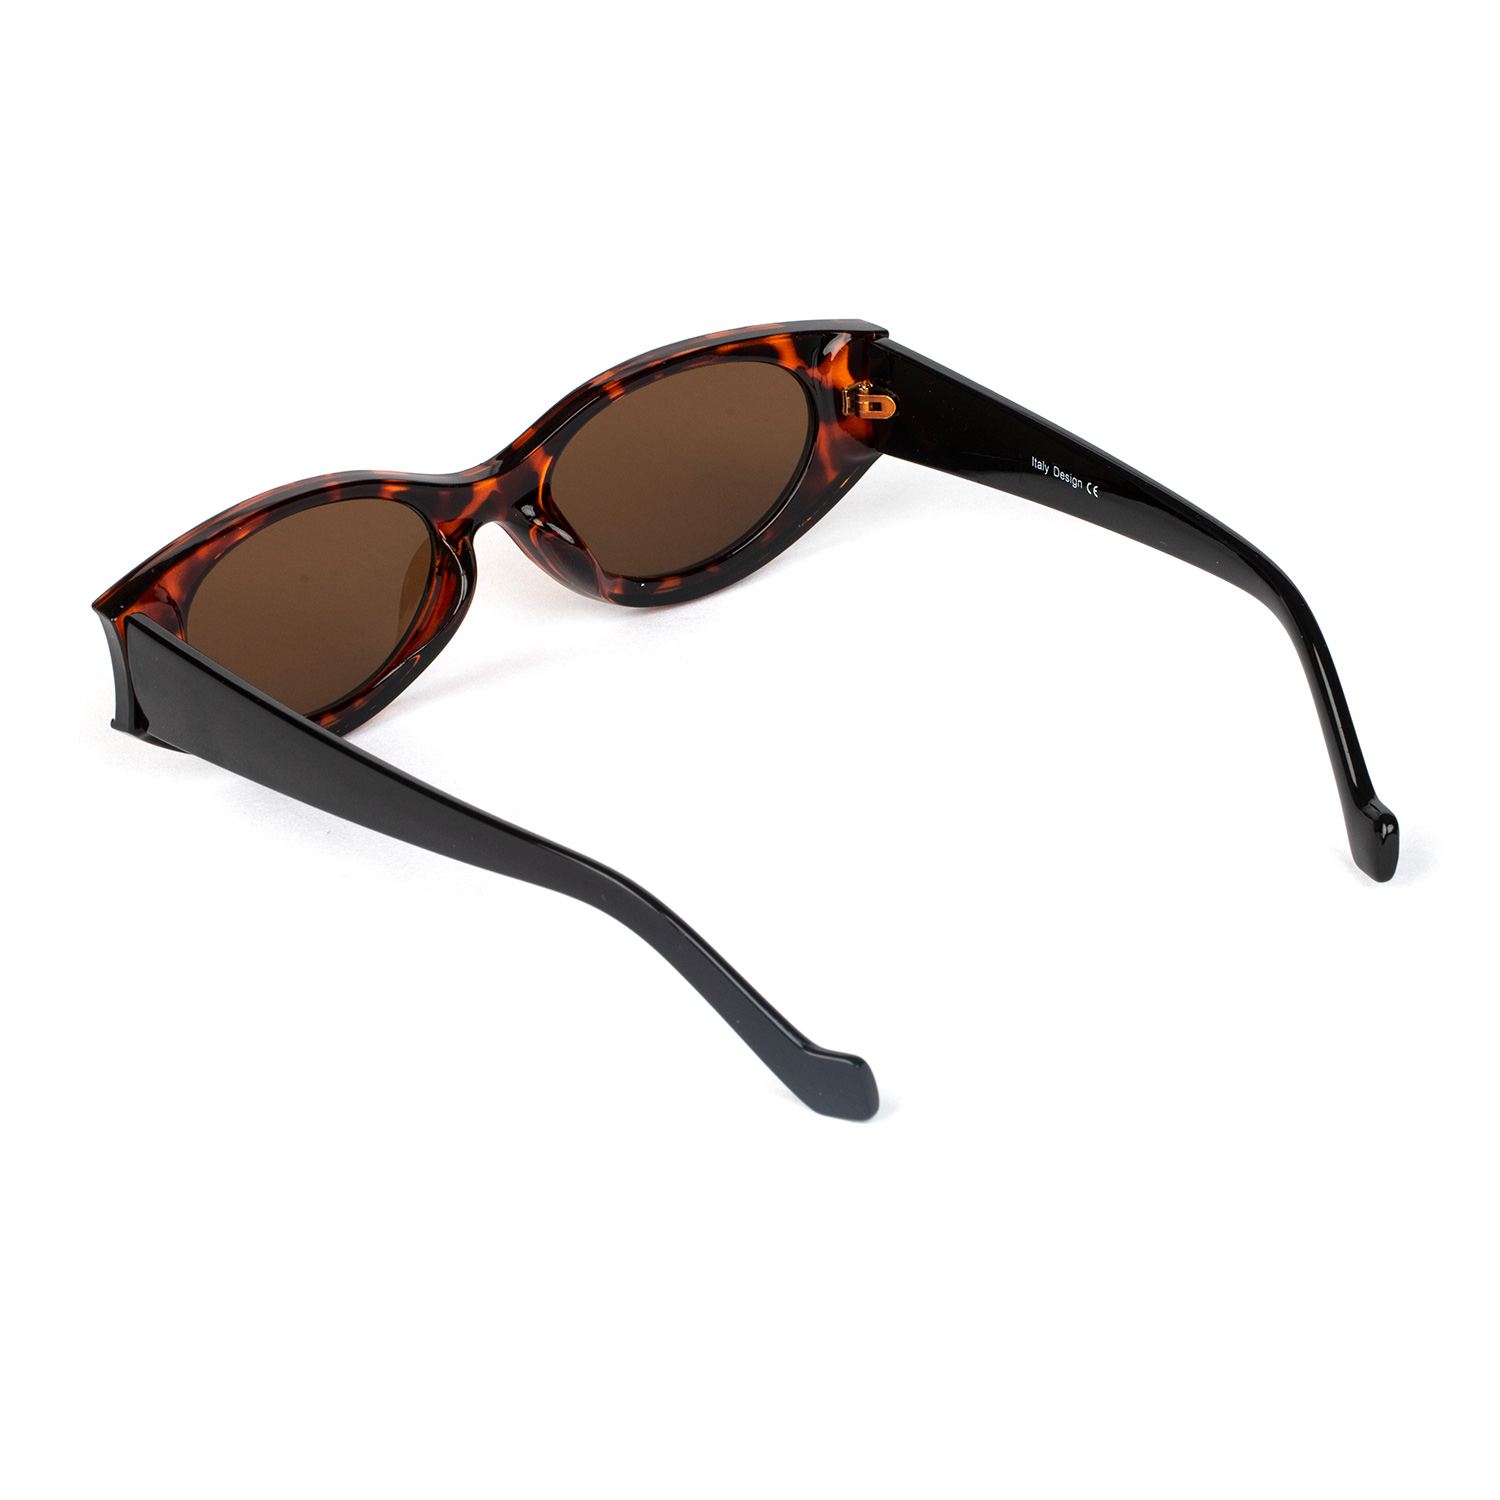 Eugenia unisex polarized sunglasses factory for promotional-2